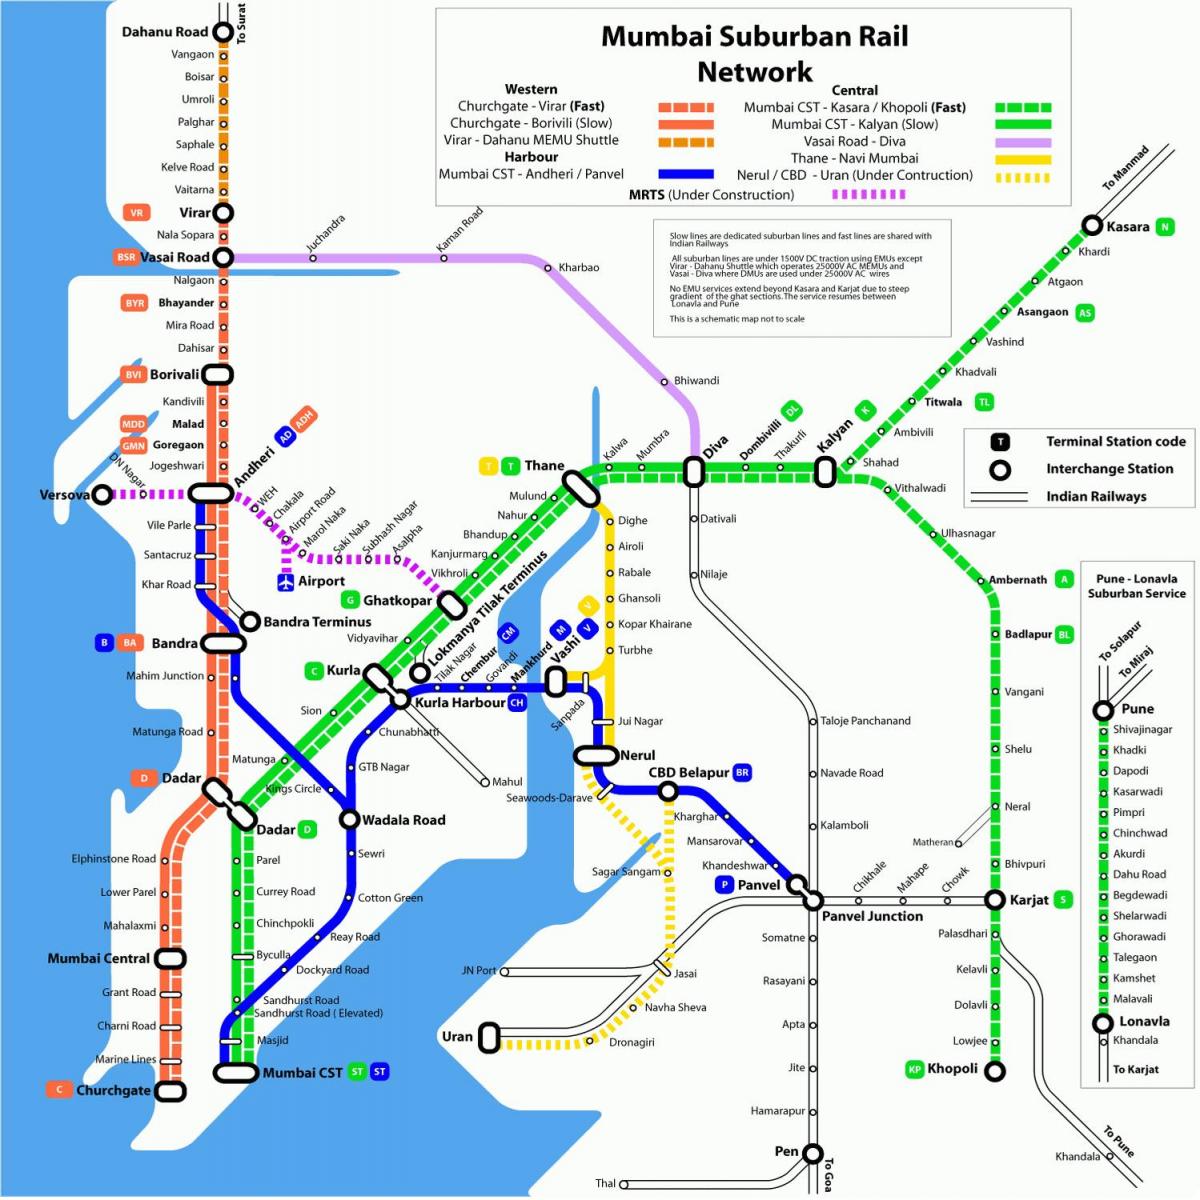 نقشہ ممبئی کے ریلوے